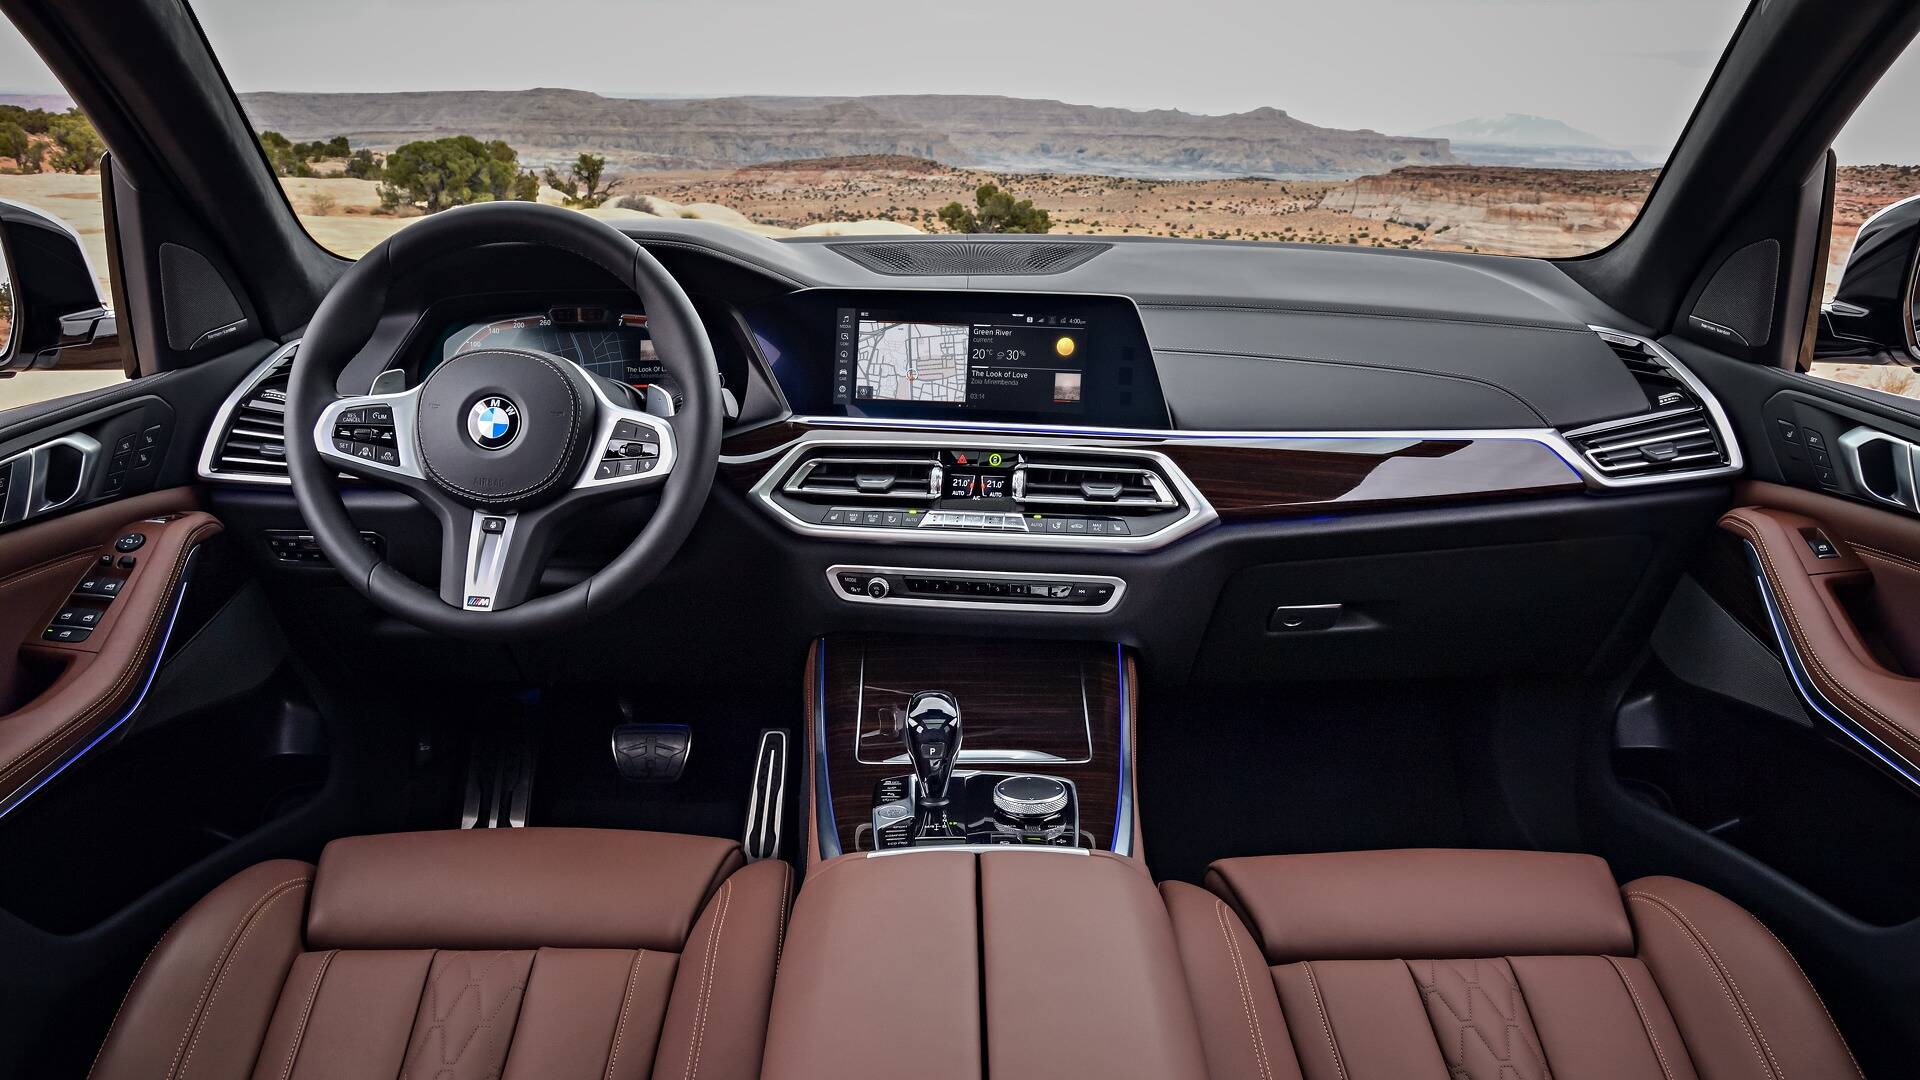 BMW X5 2019. Foto: Divulgação